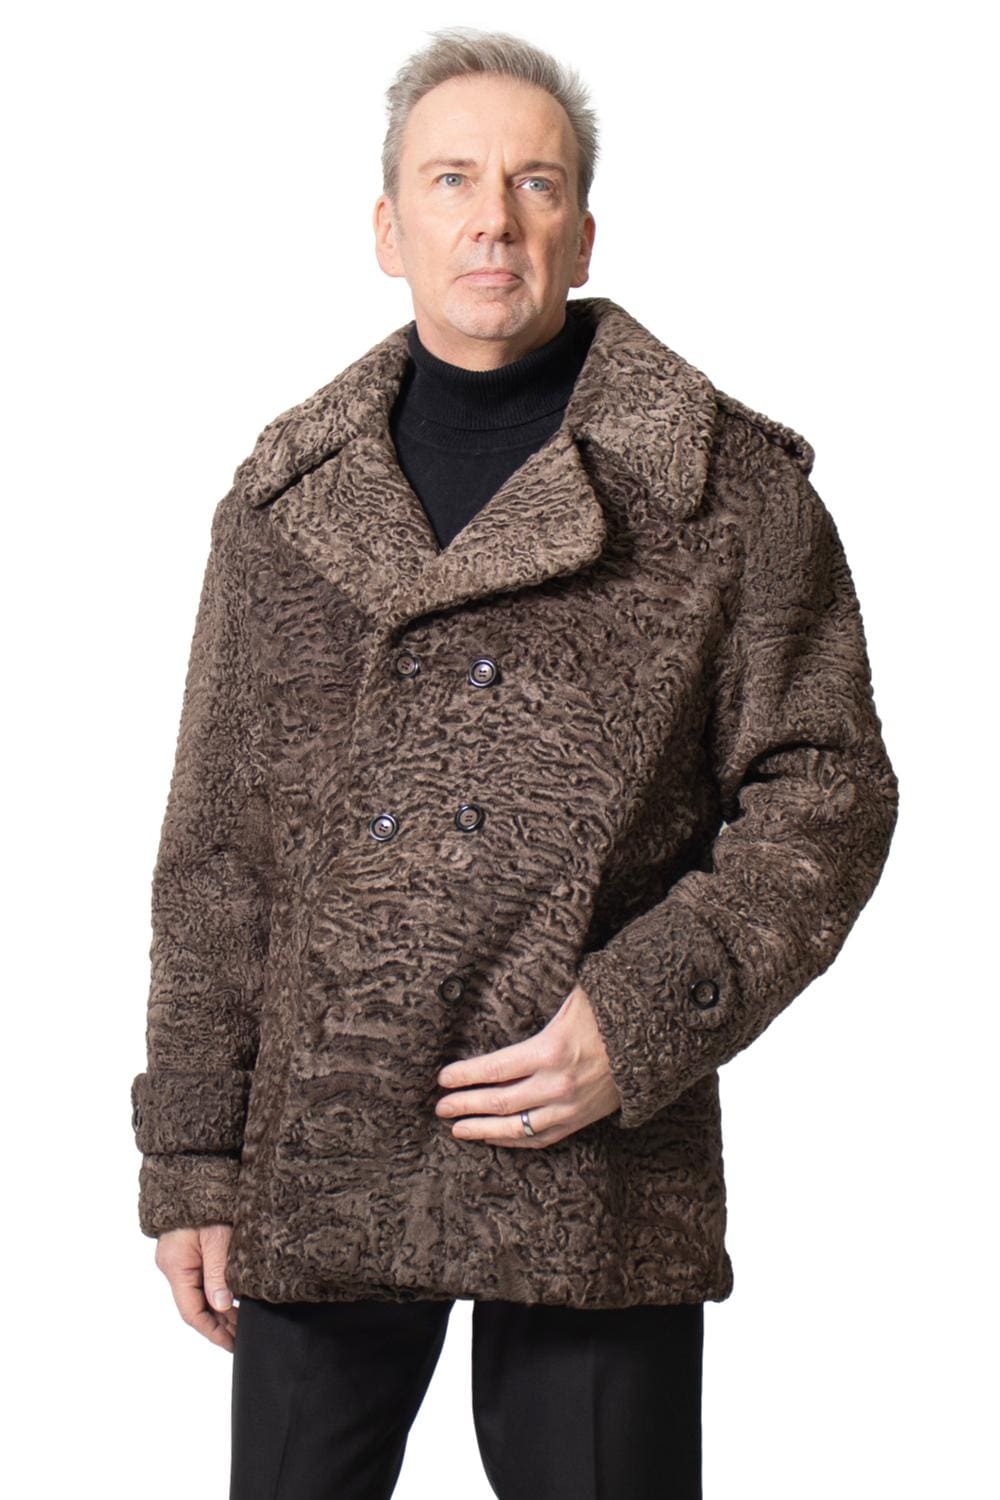 M27 2 man's persian lamb fur coat Ugent Furs